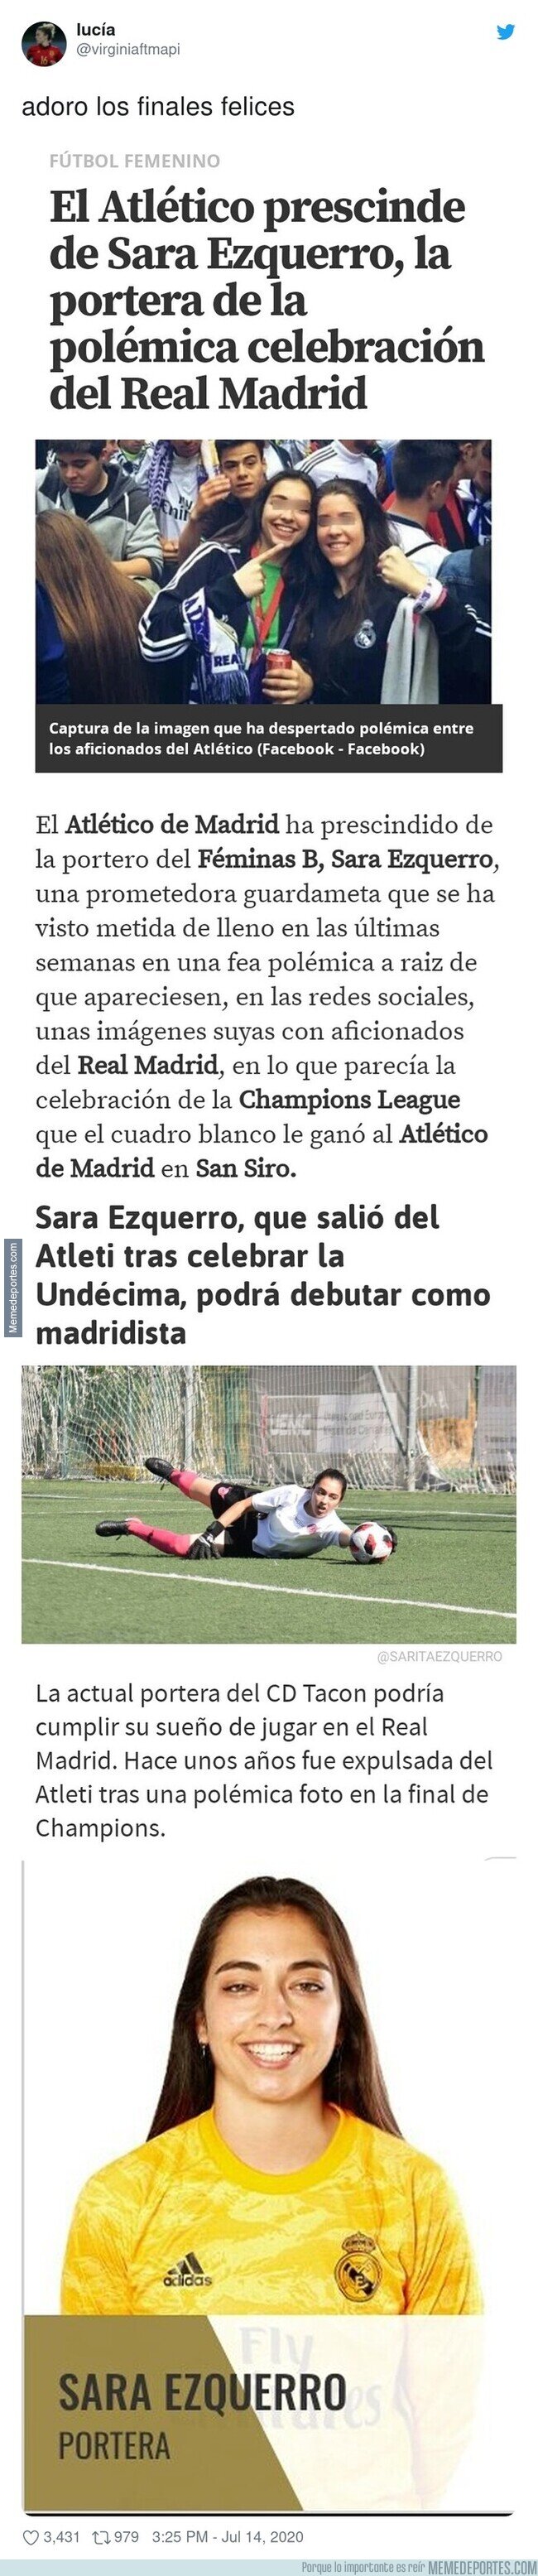 1109547 - La historia con final feliz de Sara Ezquerro, la portera expulsada del Atlético Féminas por celebrar la Undécima del Madrid